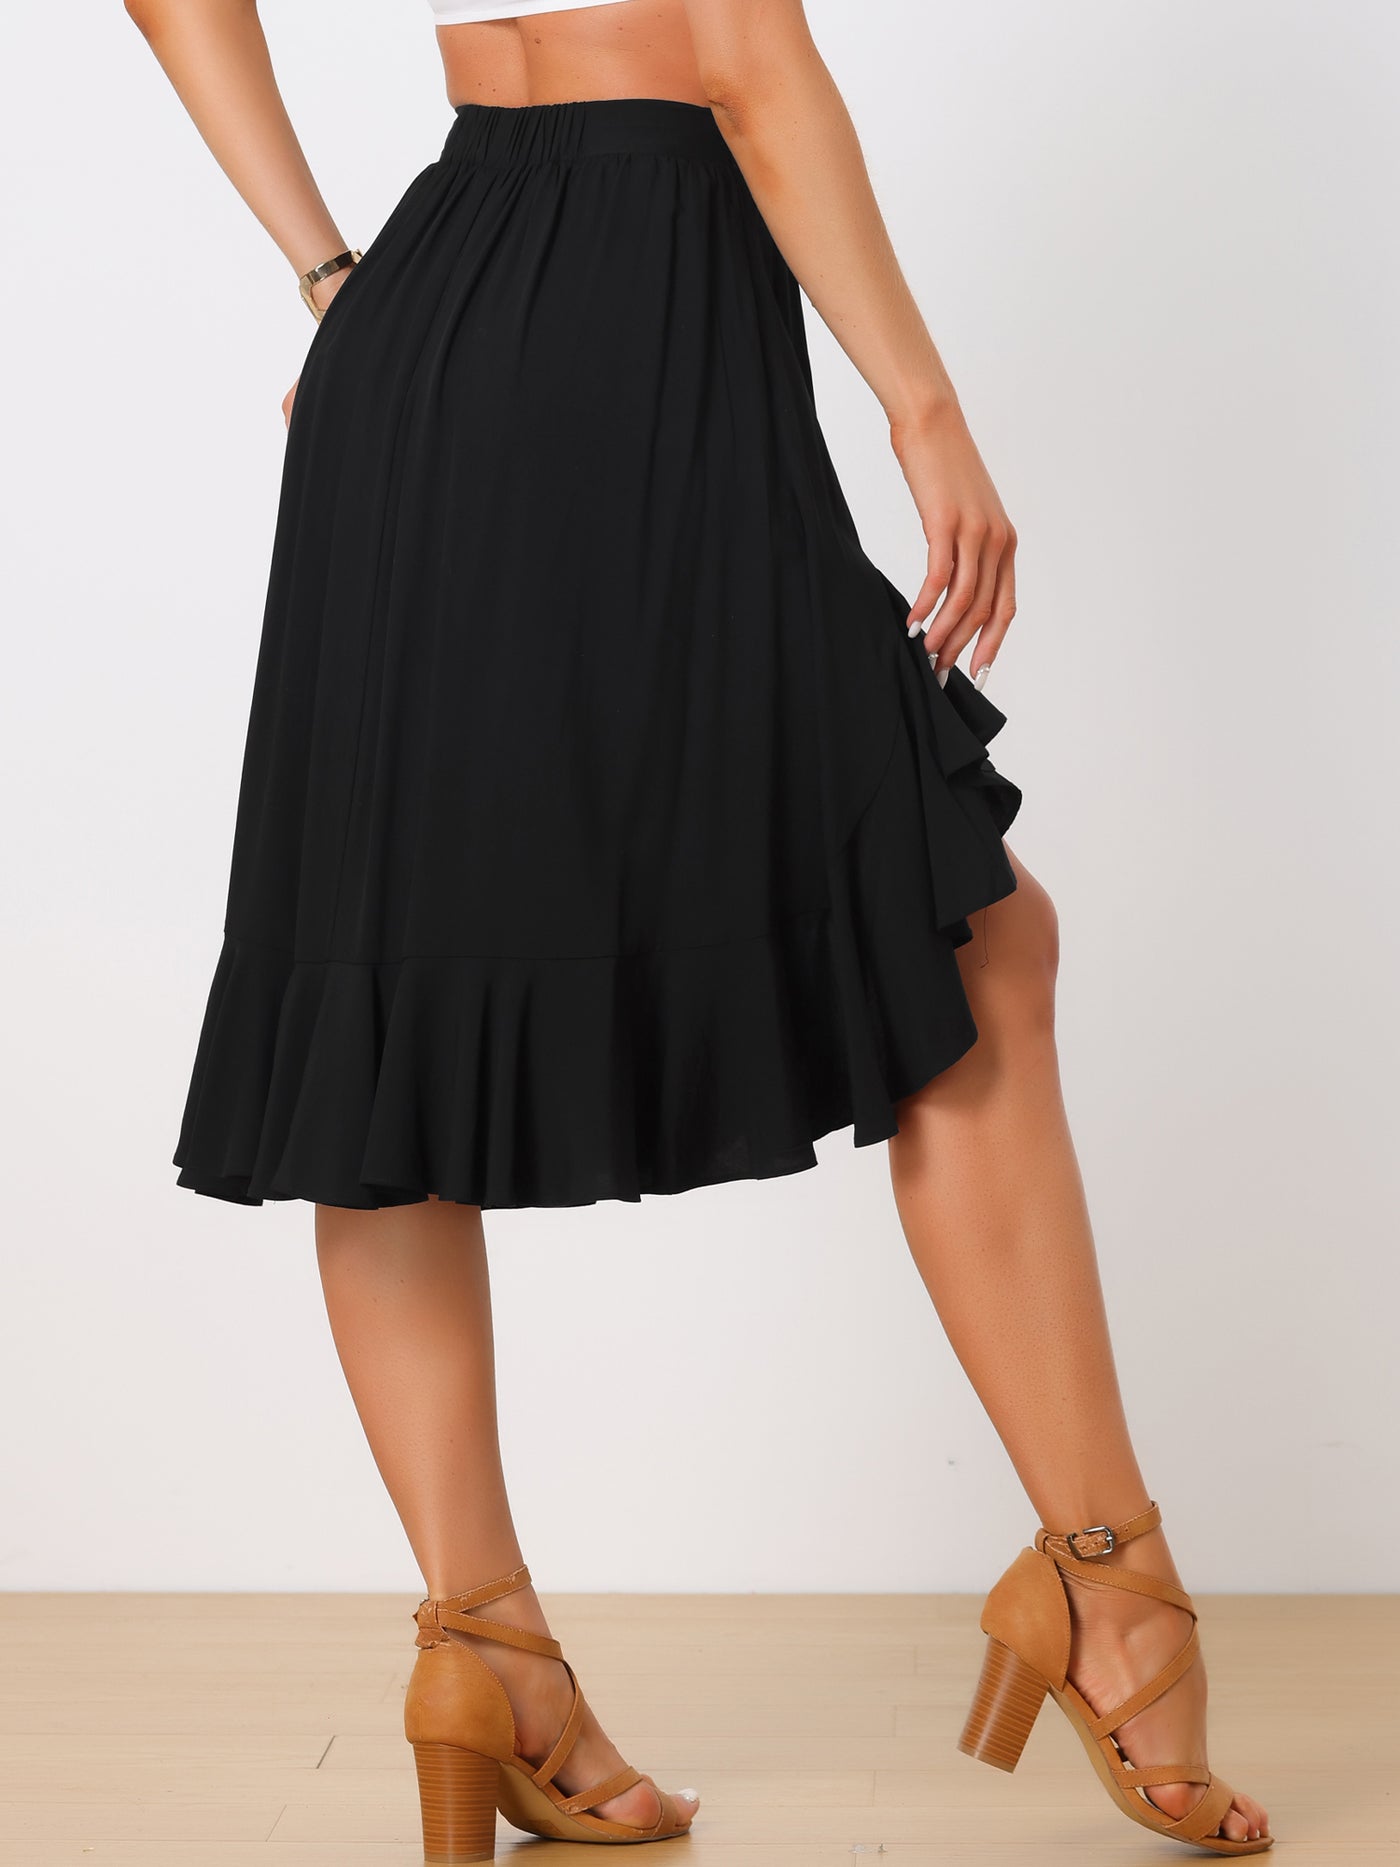 Allegra K Asymmetrical Ruffle Hem Skirts for Women's High Elastic Waist Solid Midi Skirt